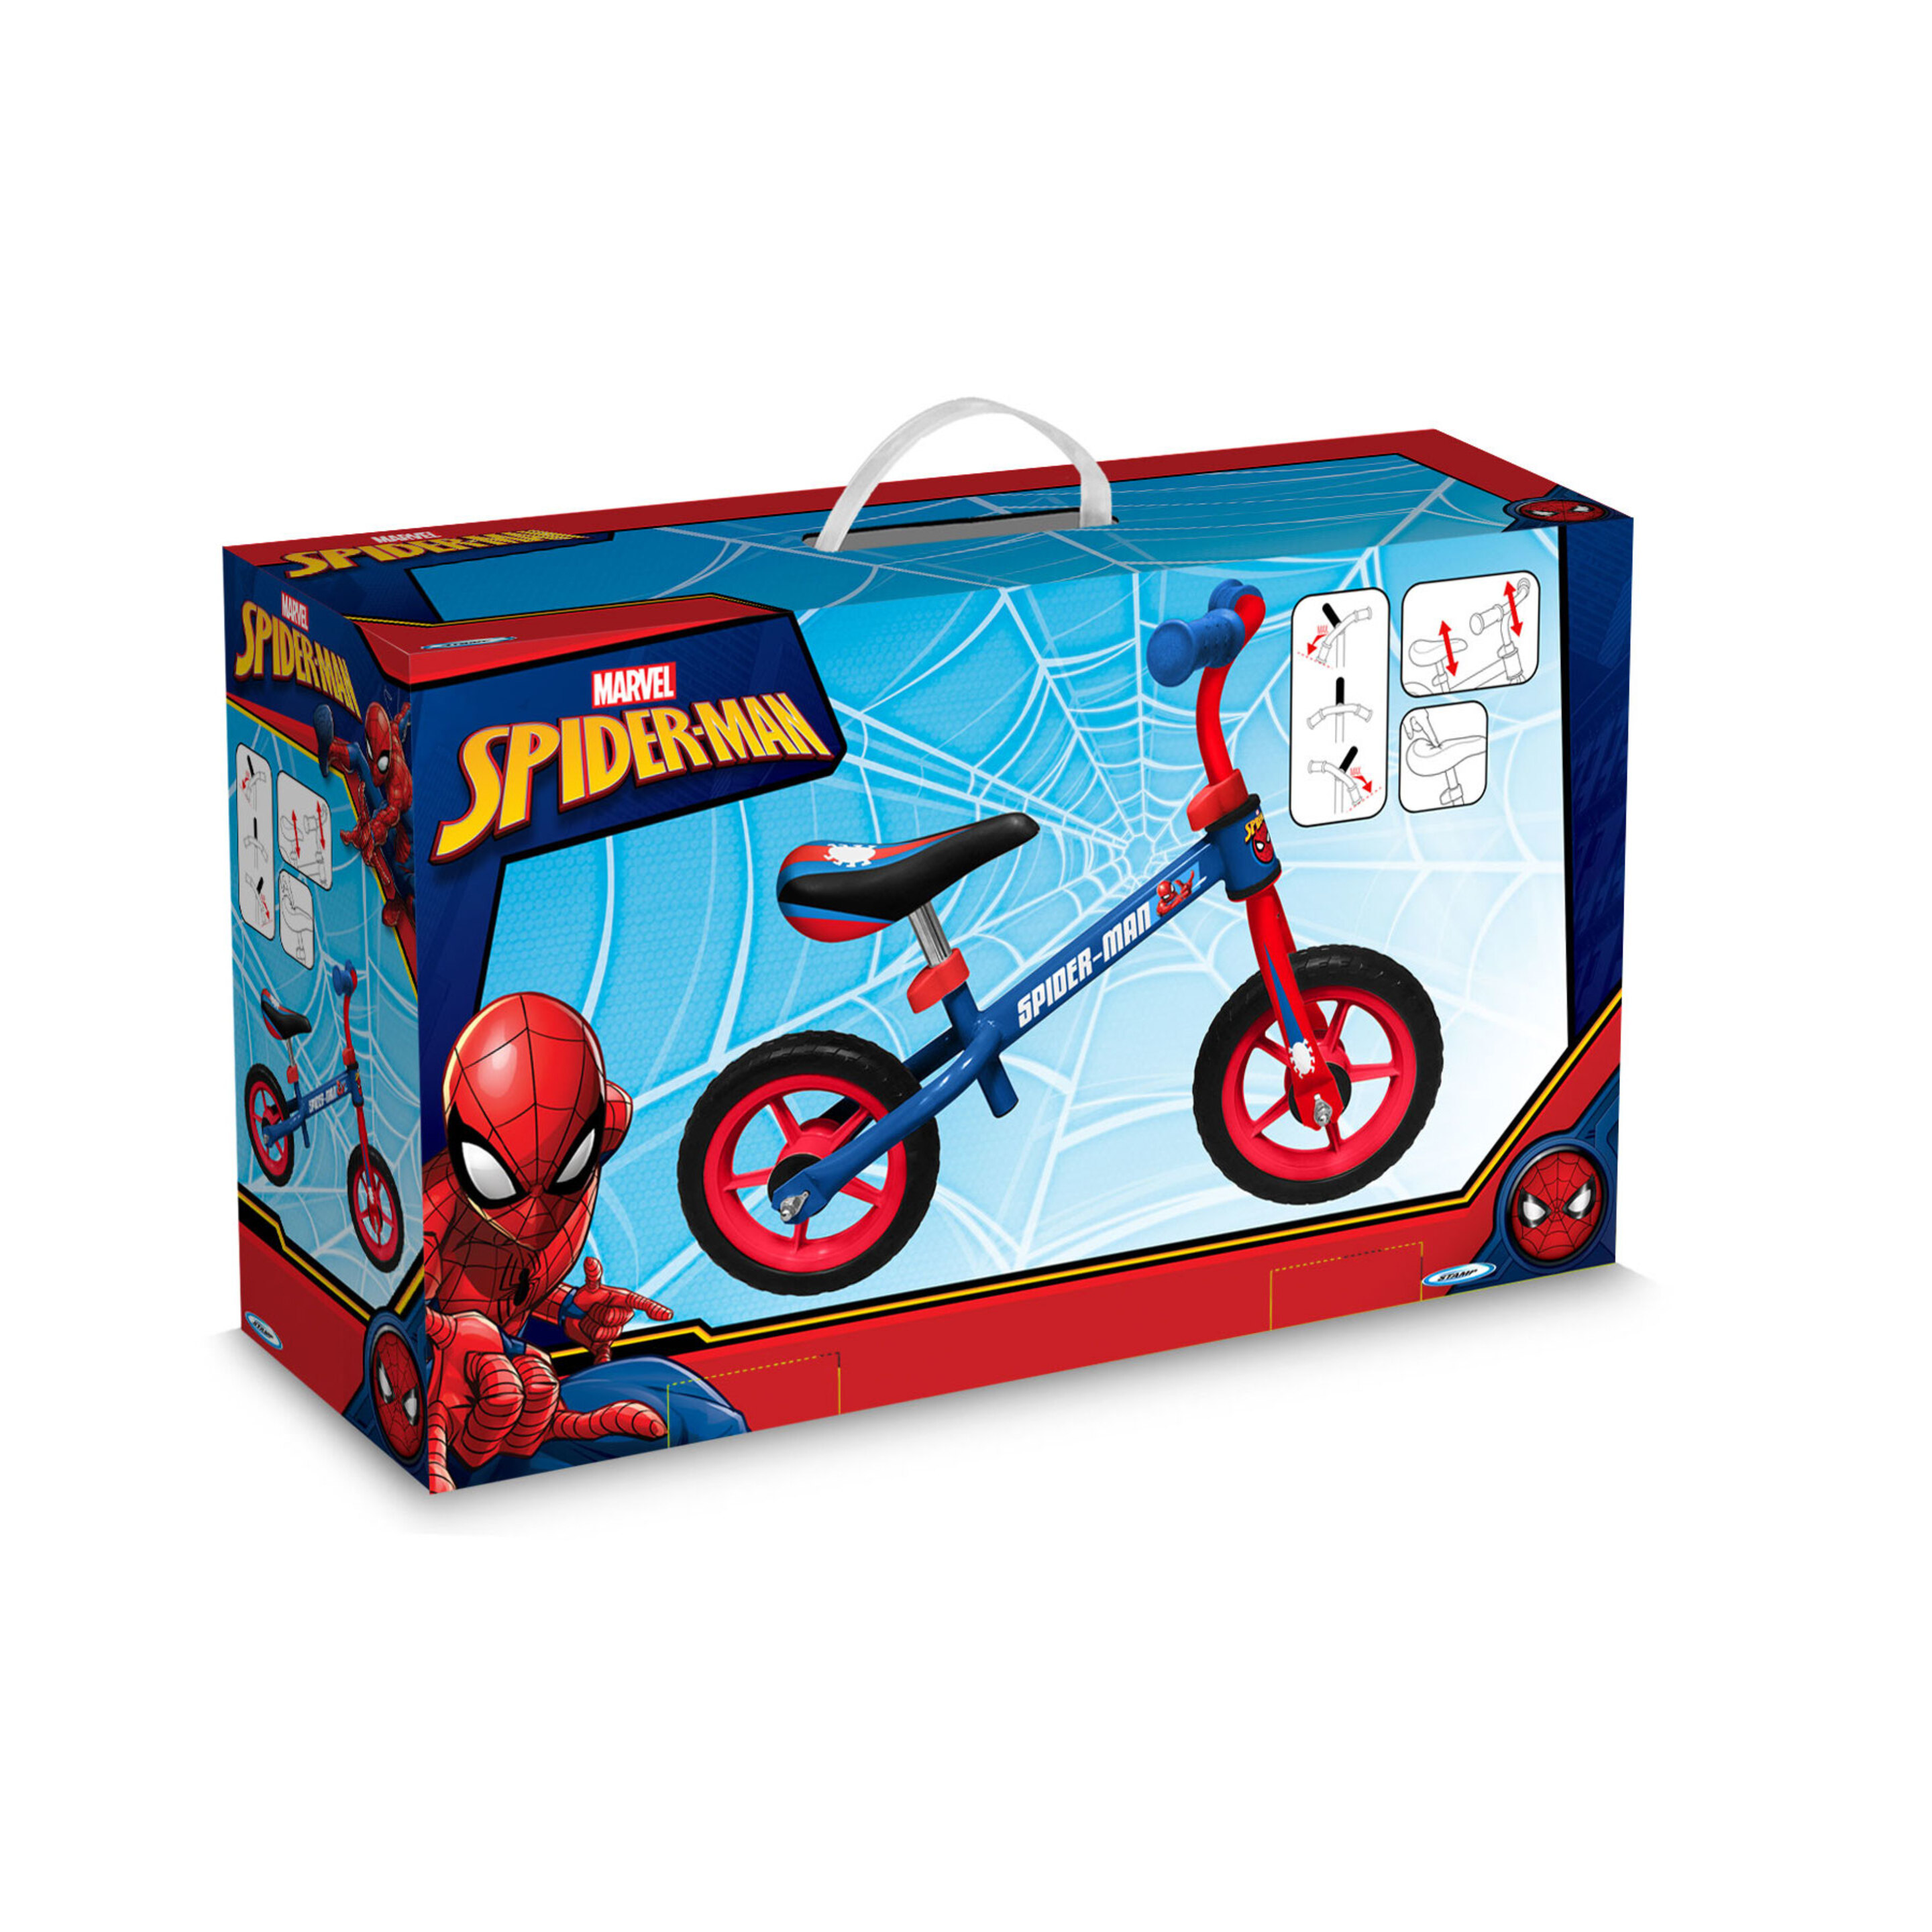 Bicicleta Equilibrio 10 Pulgadas Spider-man 2-4 Años - Azul  MKP